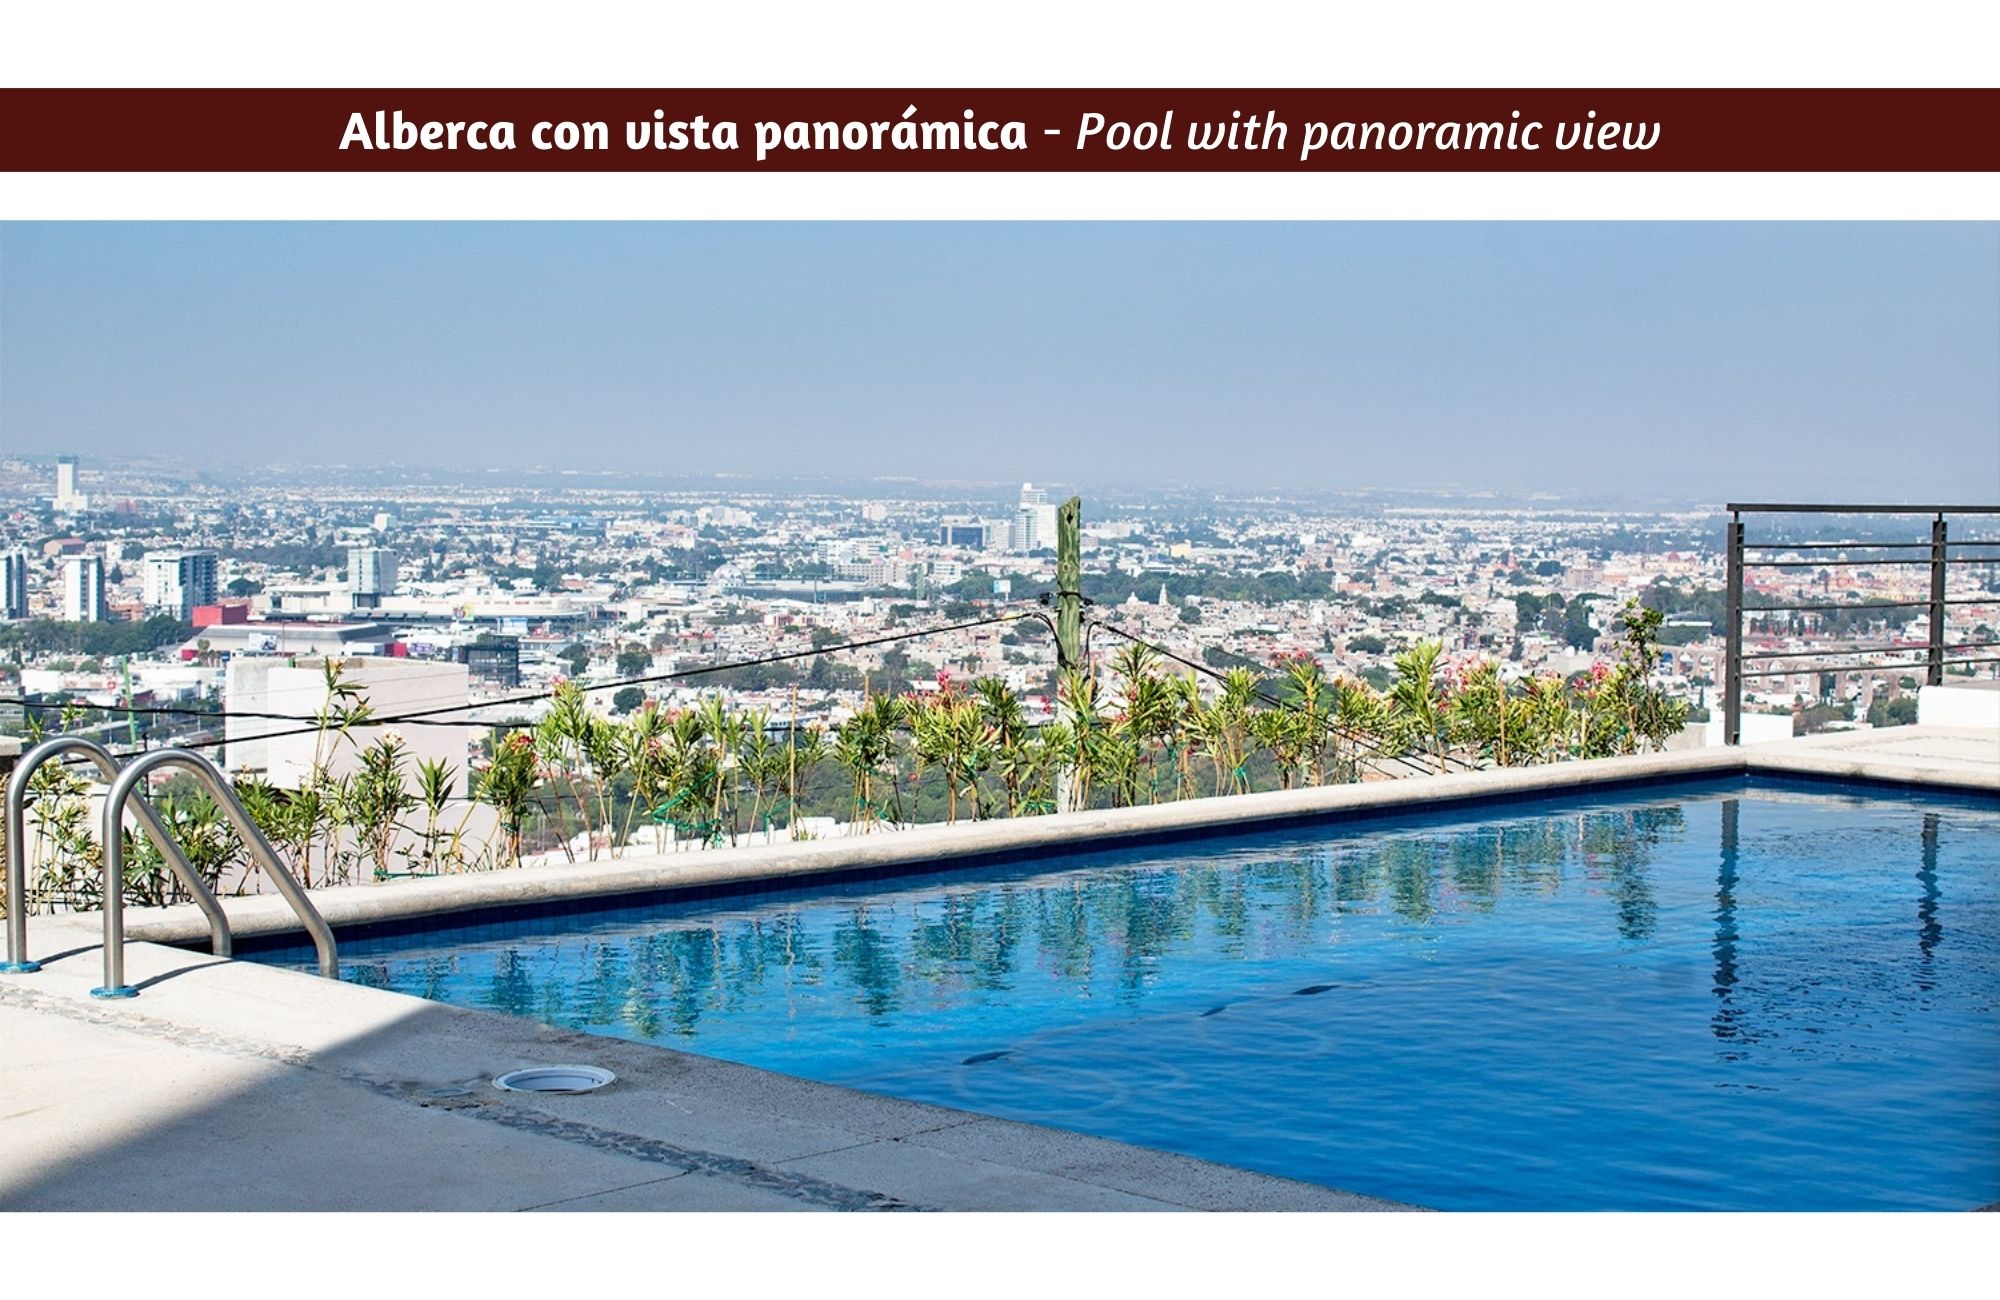 Condominio con jardín privado, vestidor, bodega, alberca gimnasio y terraza, en venta, Queretaro.